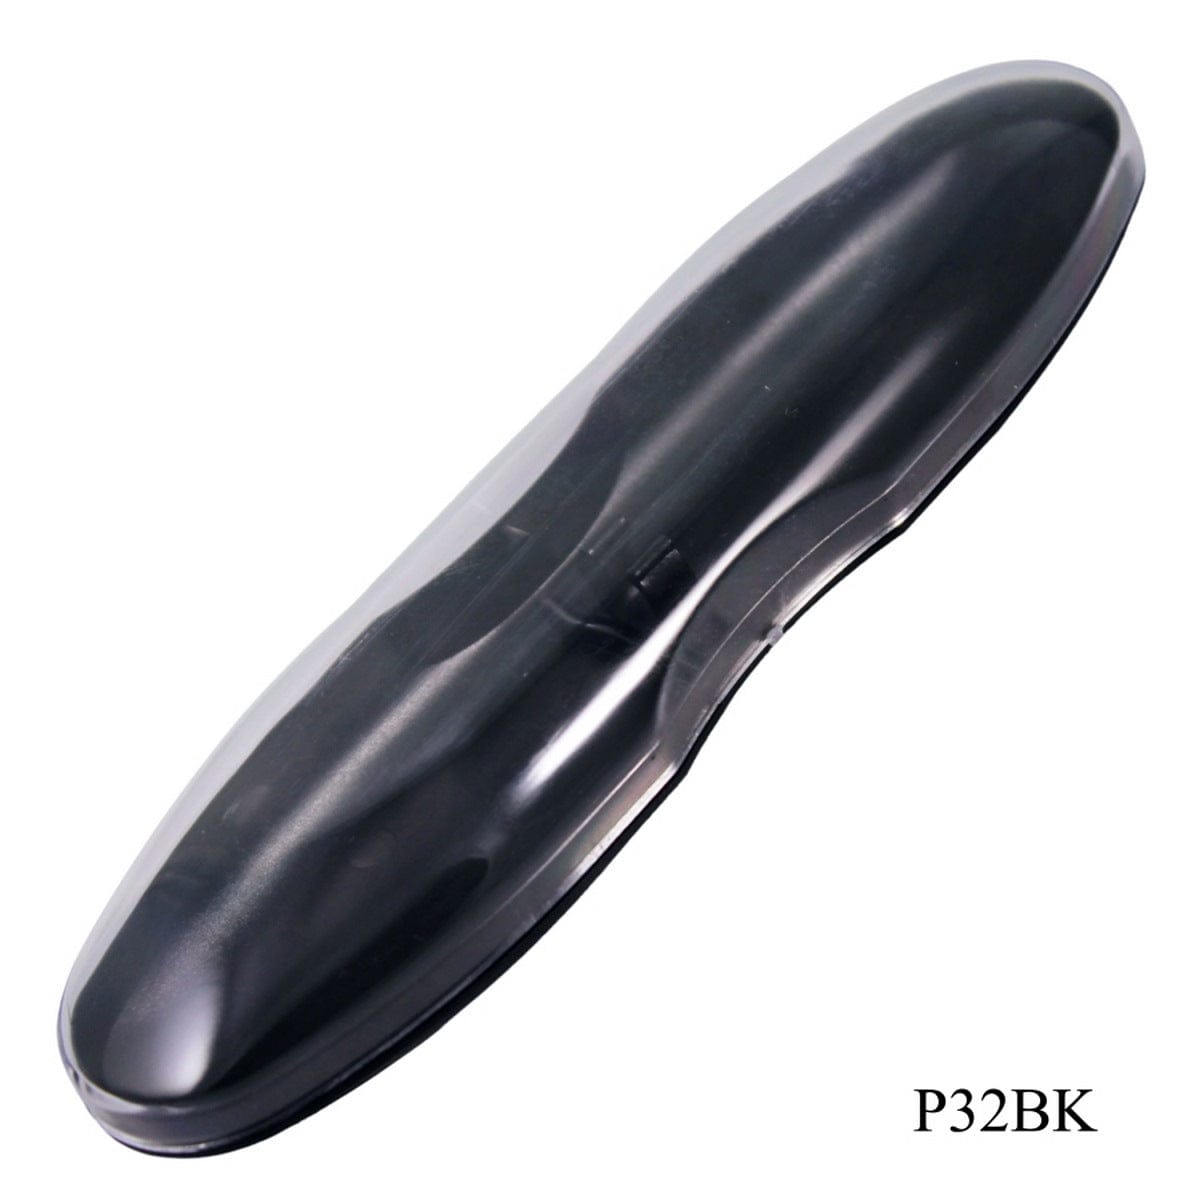 jags-mumbai Pen Pen Empty Box Capsule Black P32BK